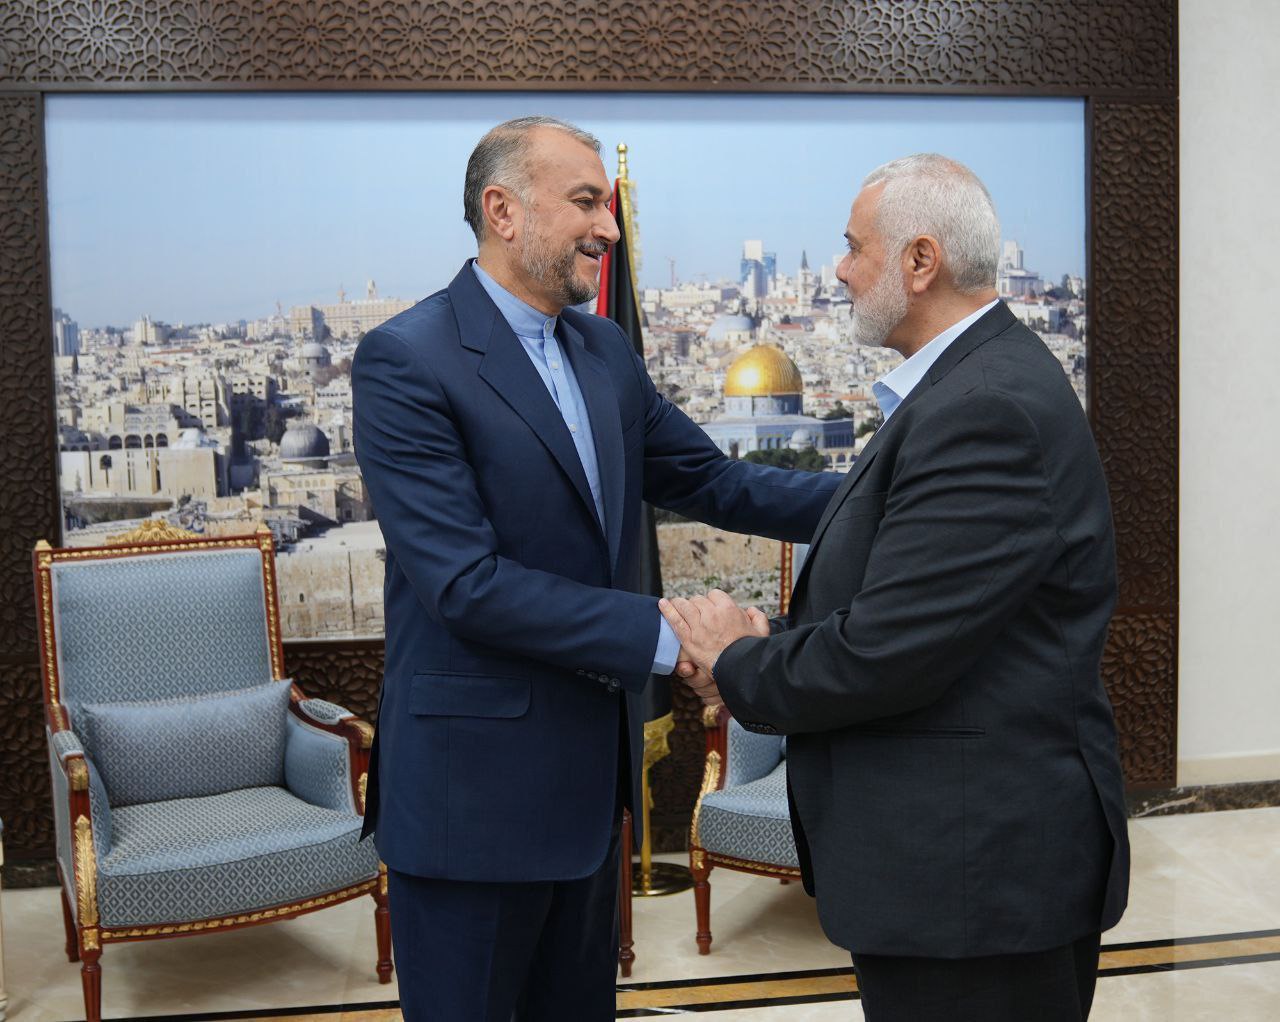 دیدار امروز وزیر امور خارجه با اسماعیل هنیه در دوحه+عکس